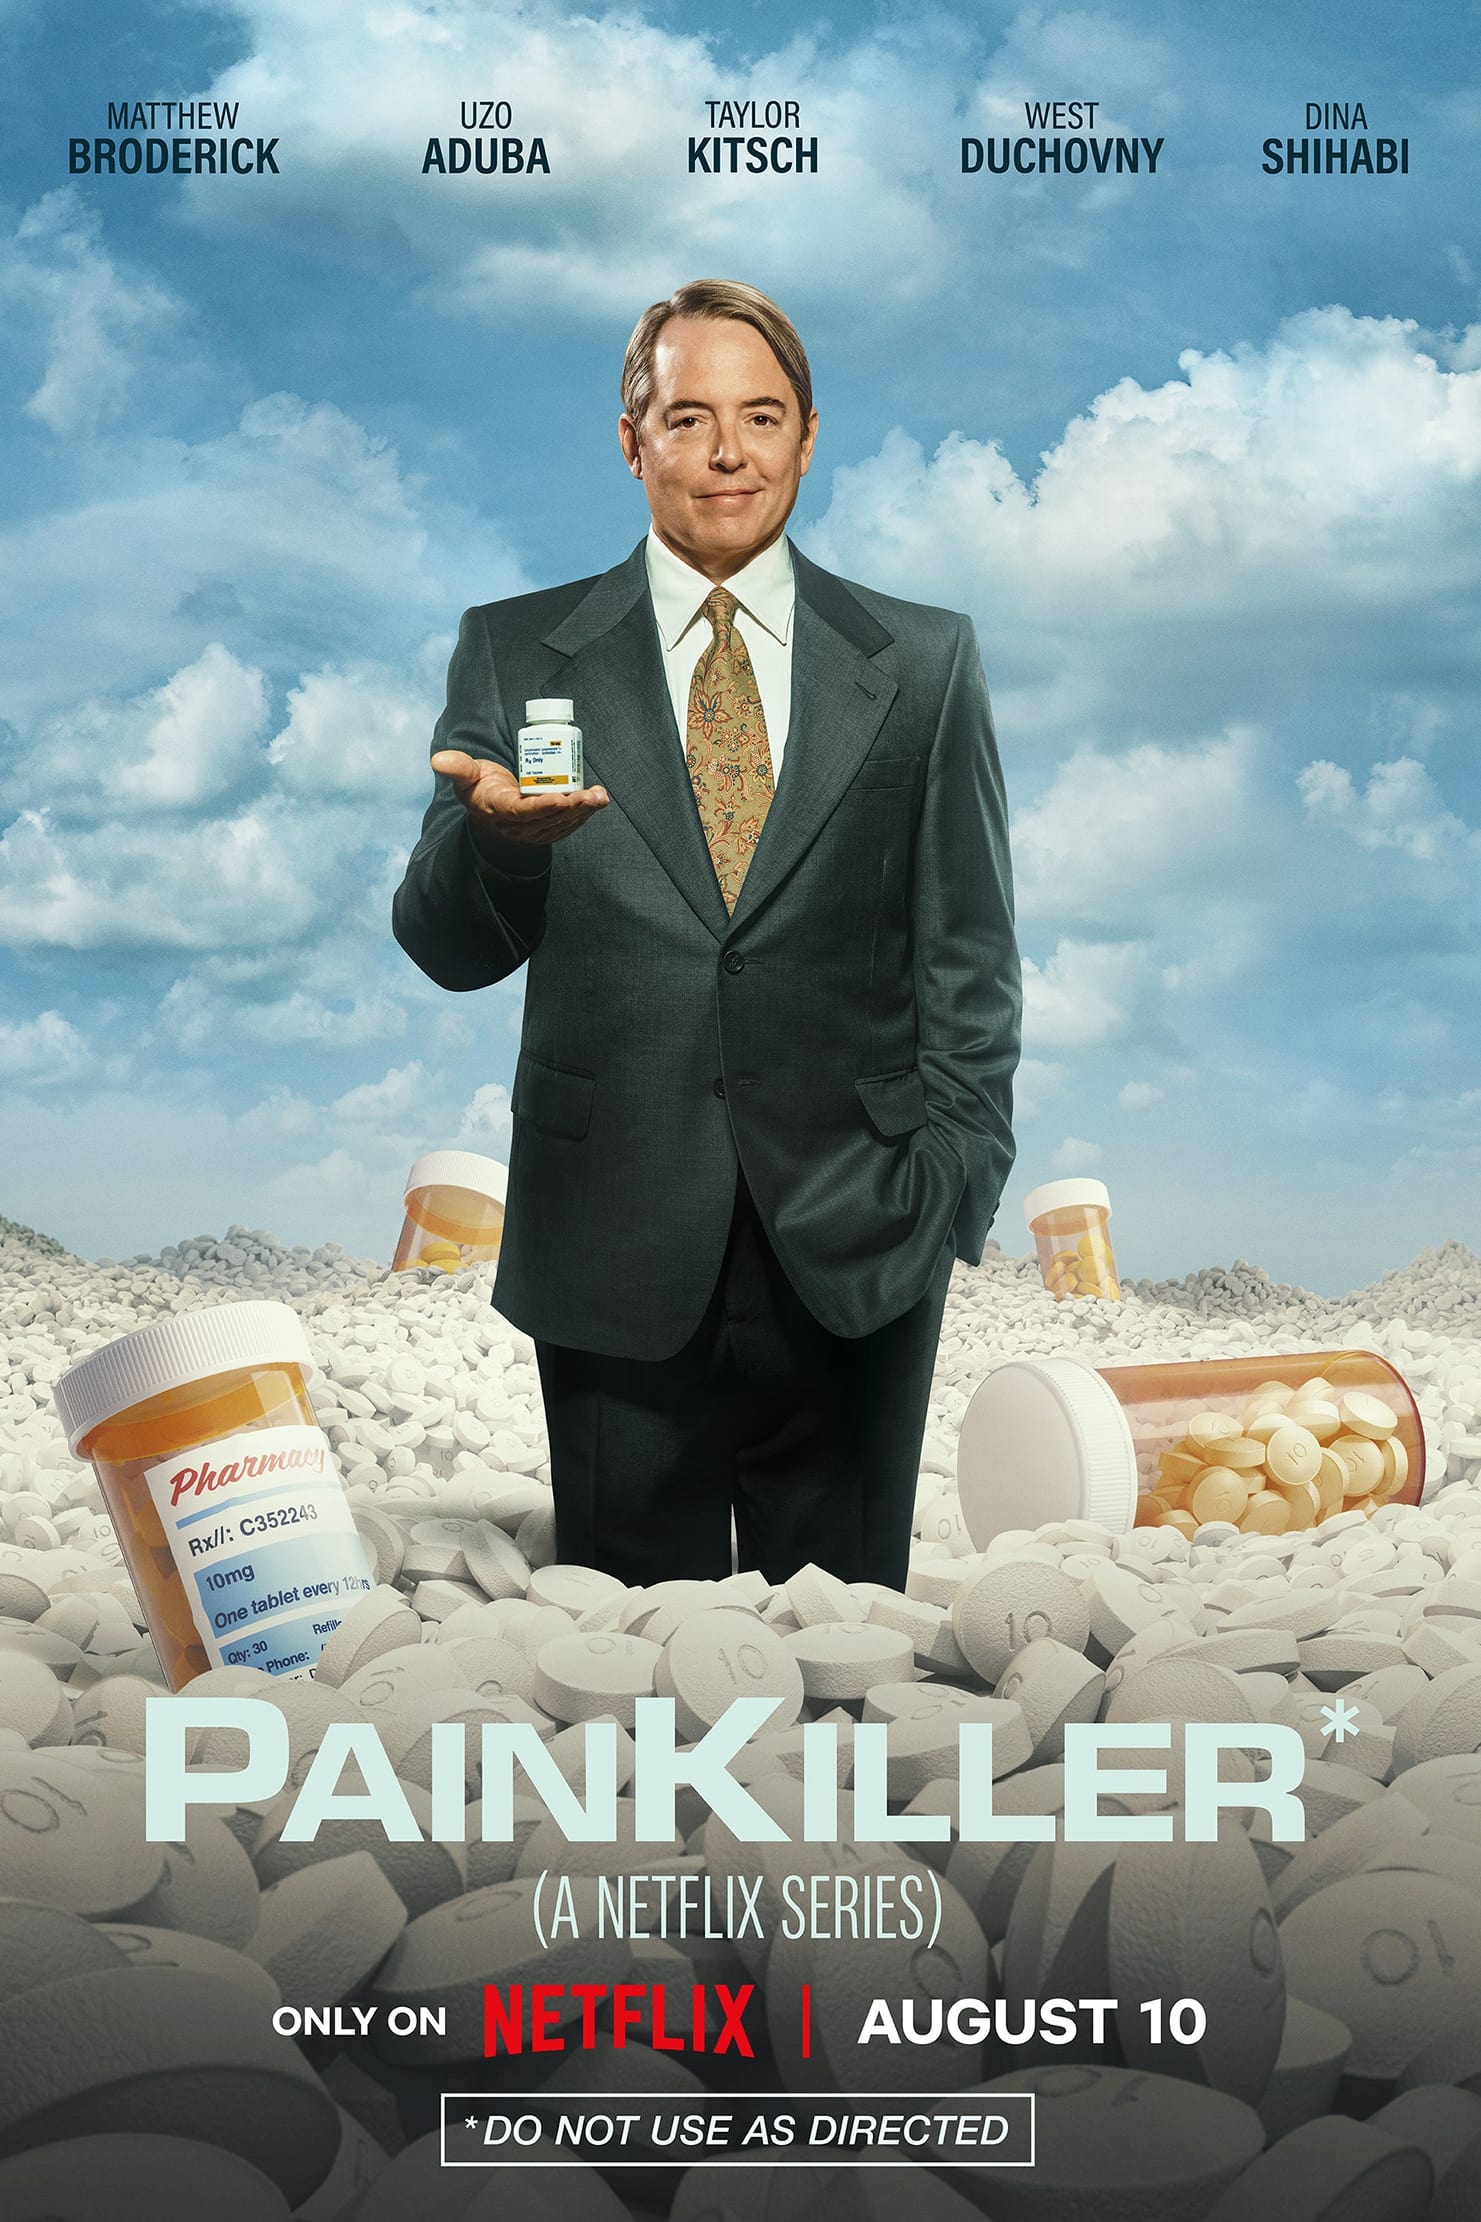 TV ratings for Painkiller in Japan. Netflix TV series